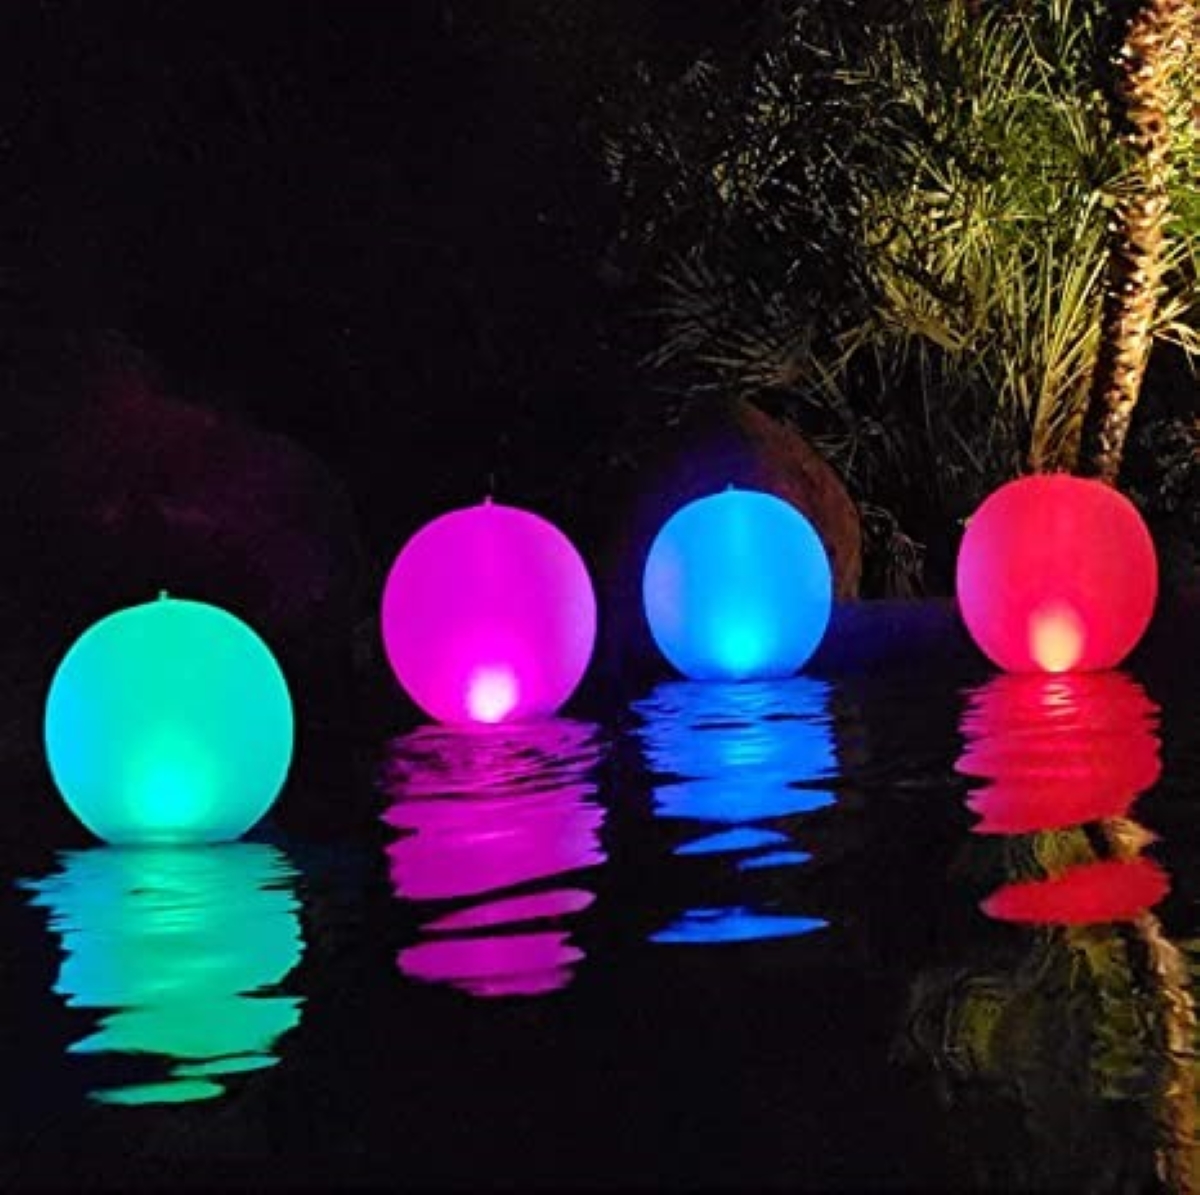 pool lighting ideas - multi-color globe lights